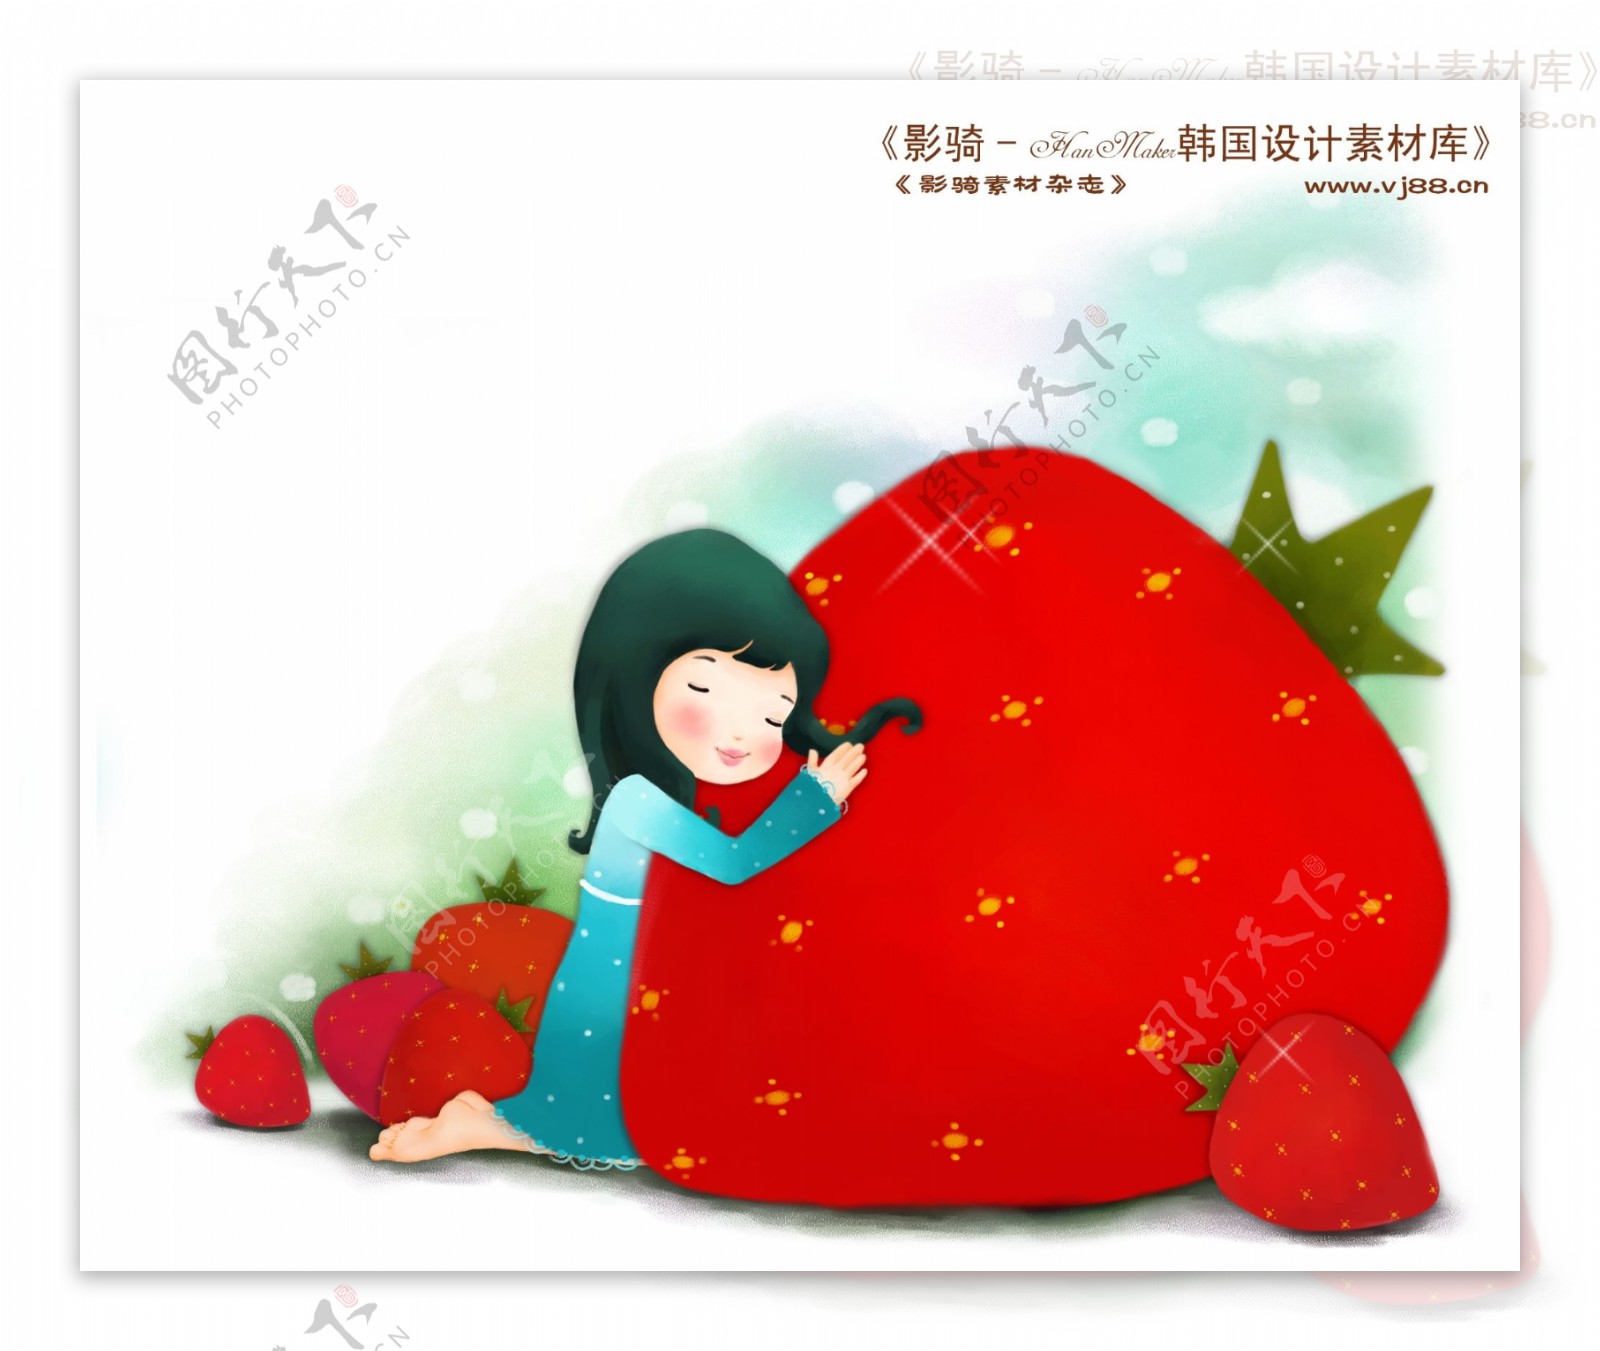 HanMaker韩国设计素材库背景卡通漫画可爱梦幻儿童孩子女孩童真草莓